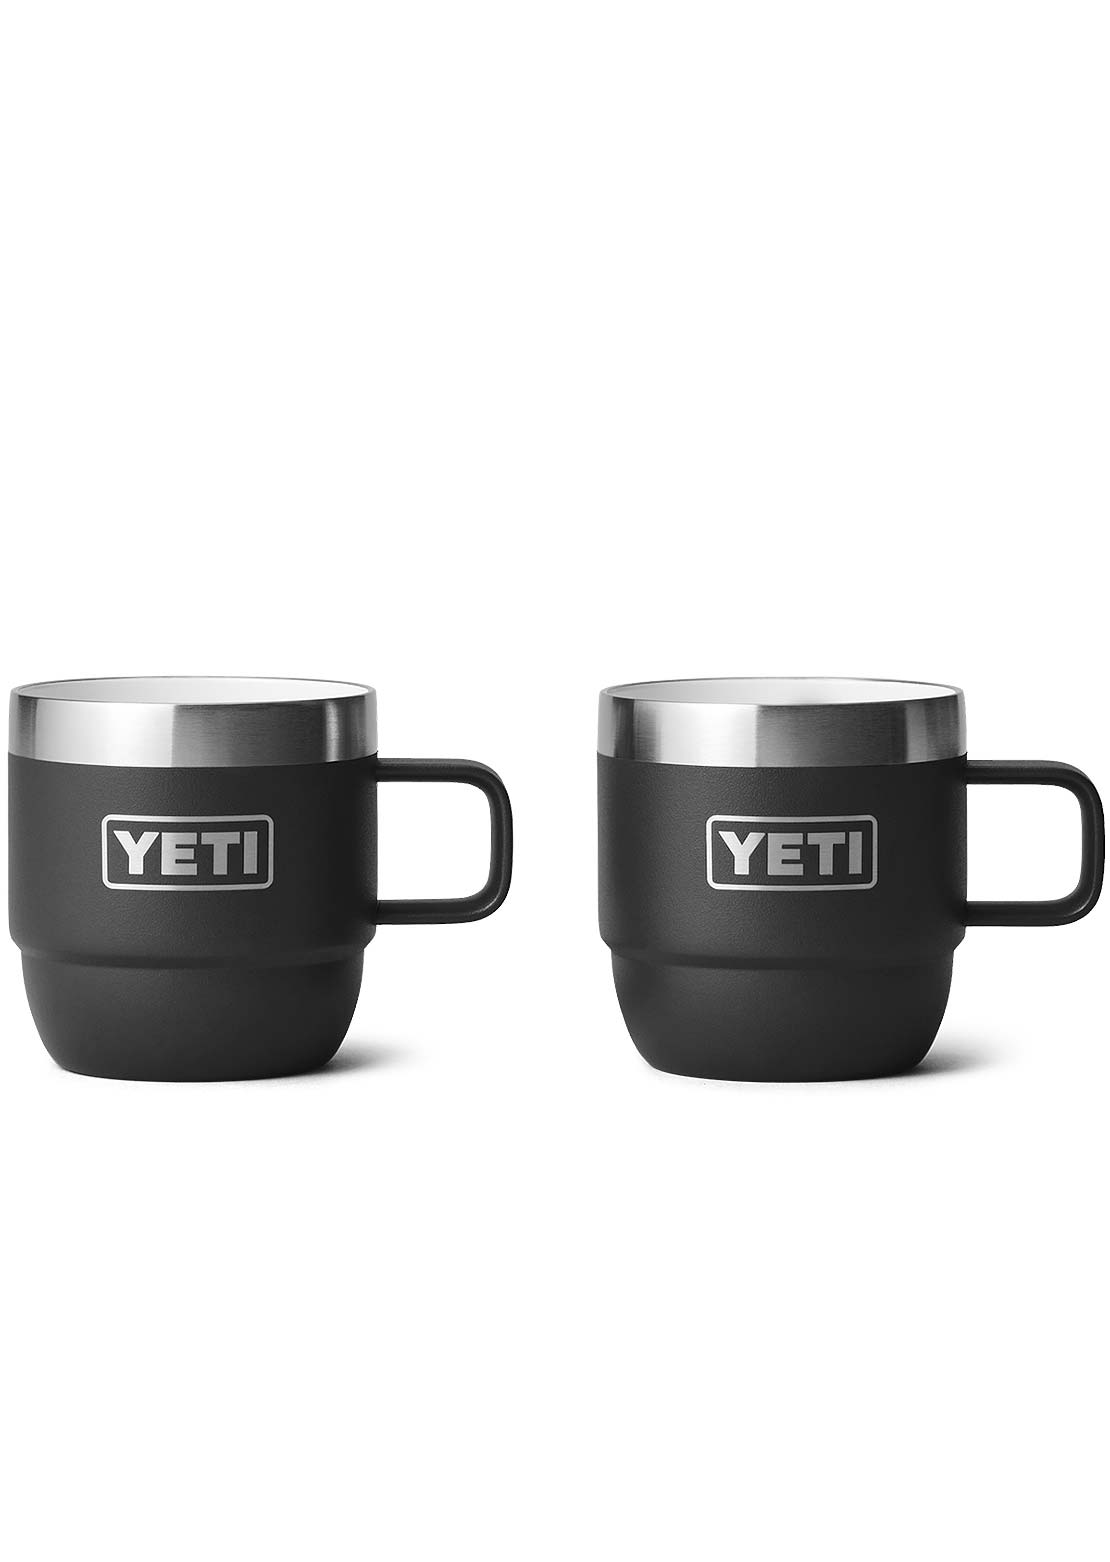 Yeti Rambler 6 Oz Espresso 2Pk Mug Black